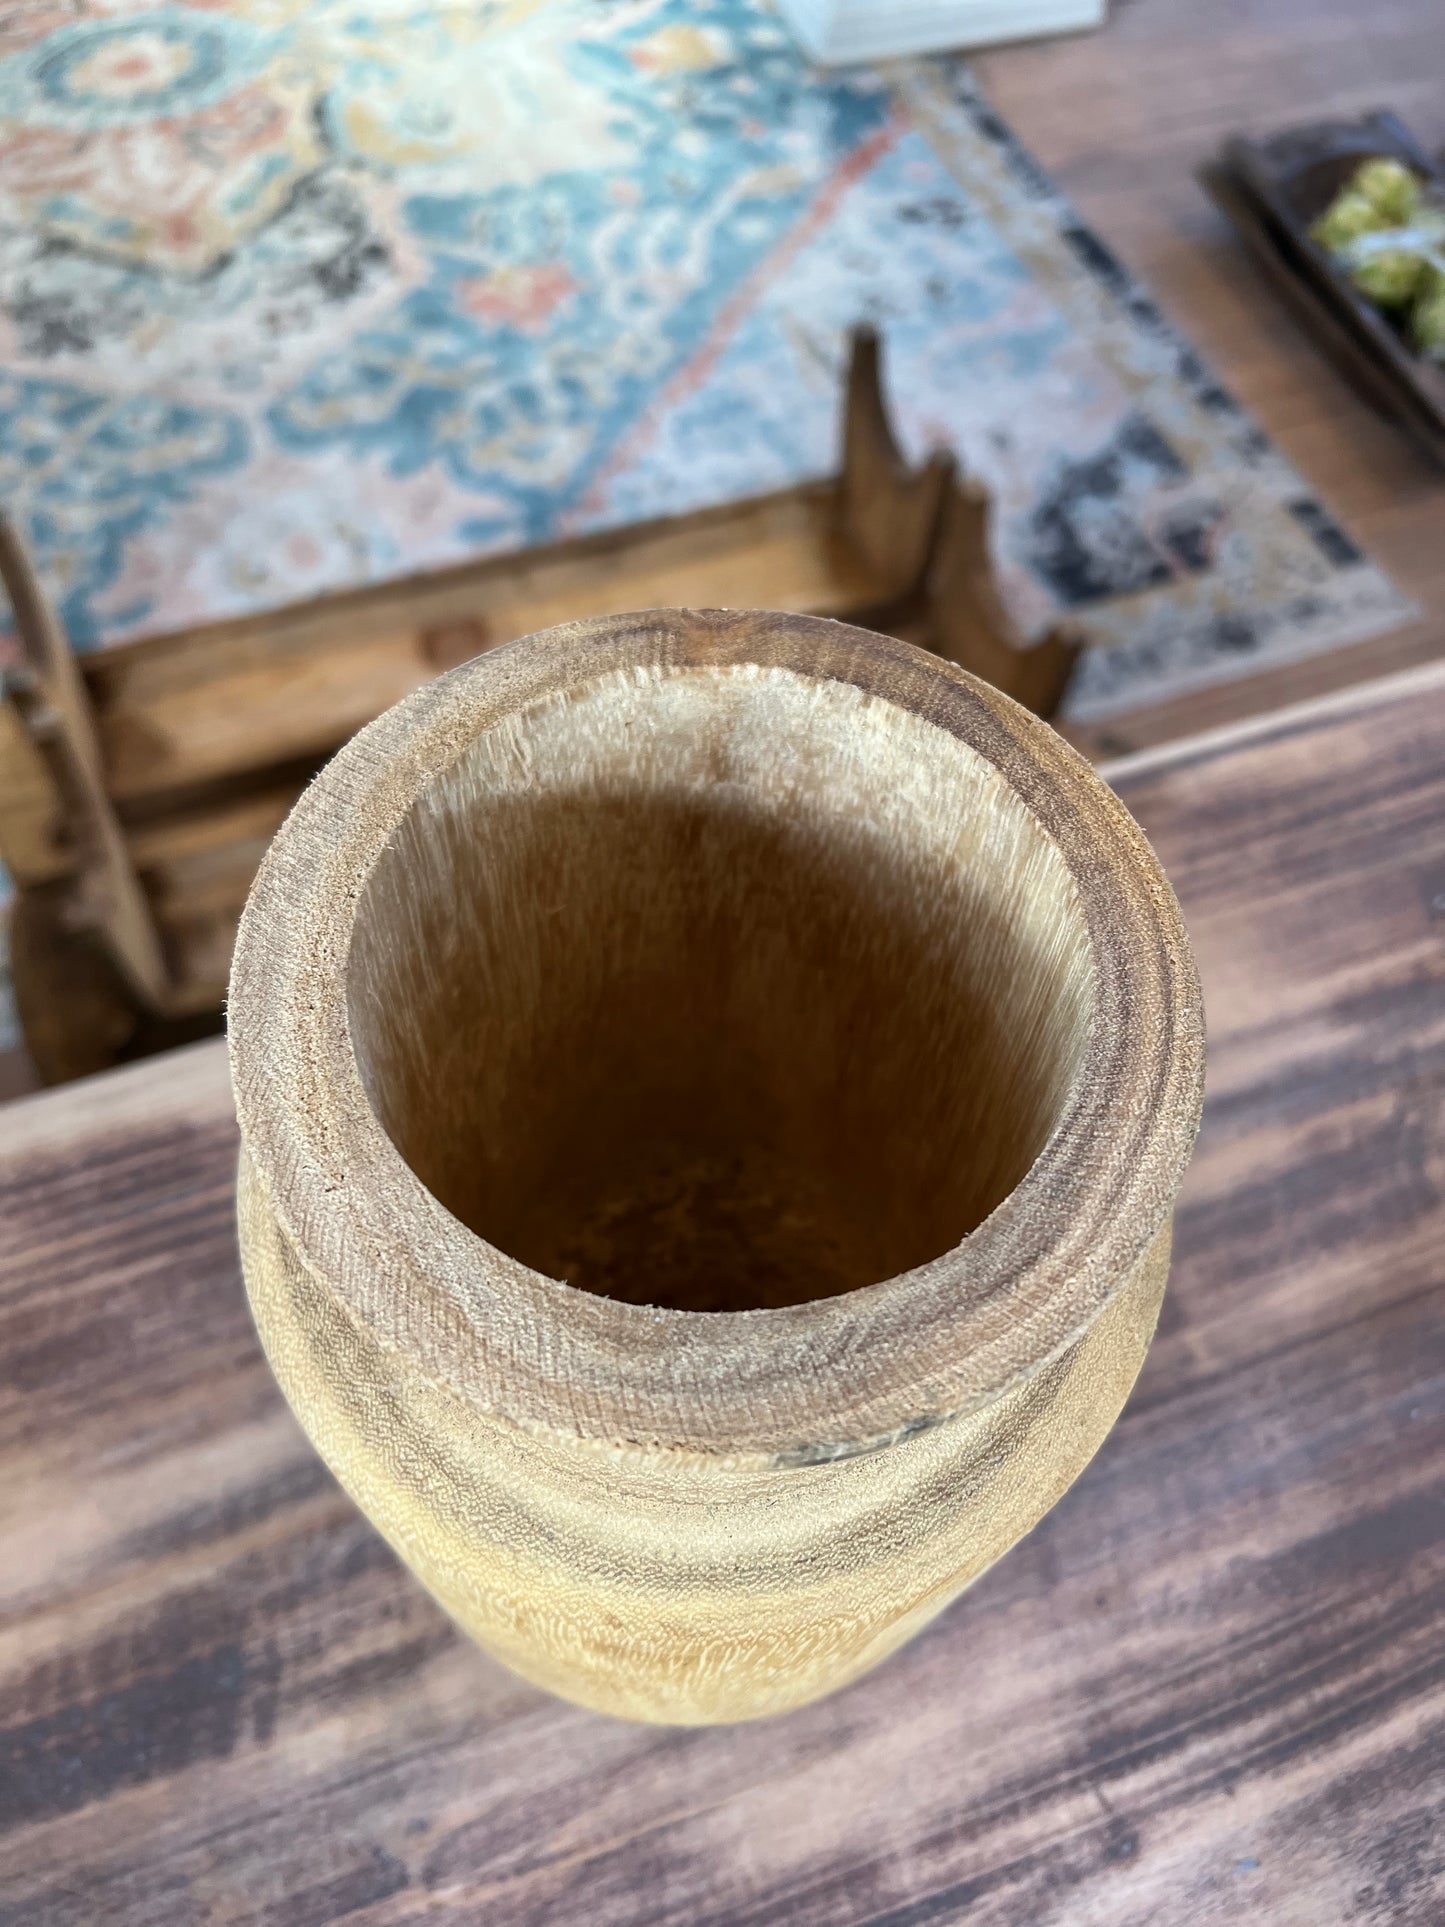 Hand turned Wood Vase